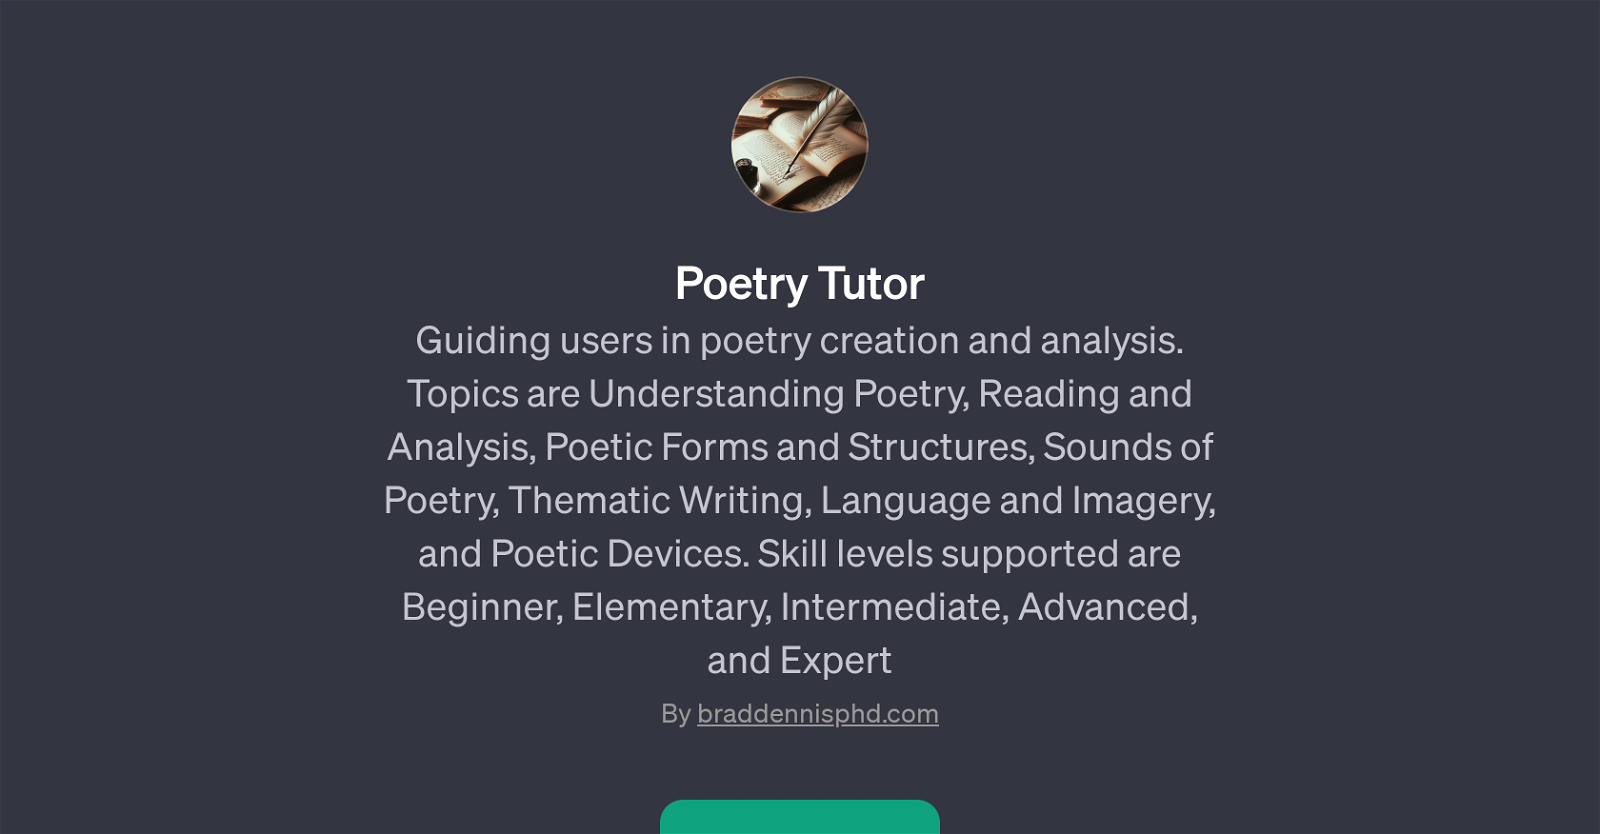 Poetry Tutor website